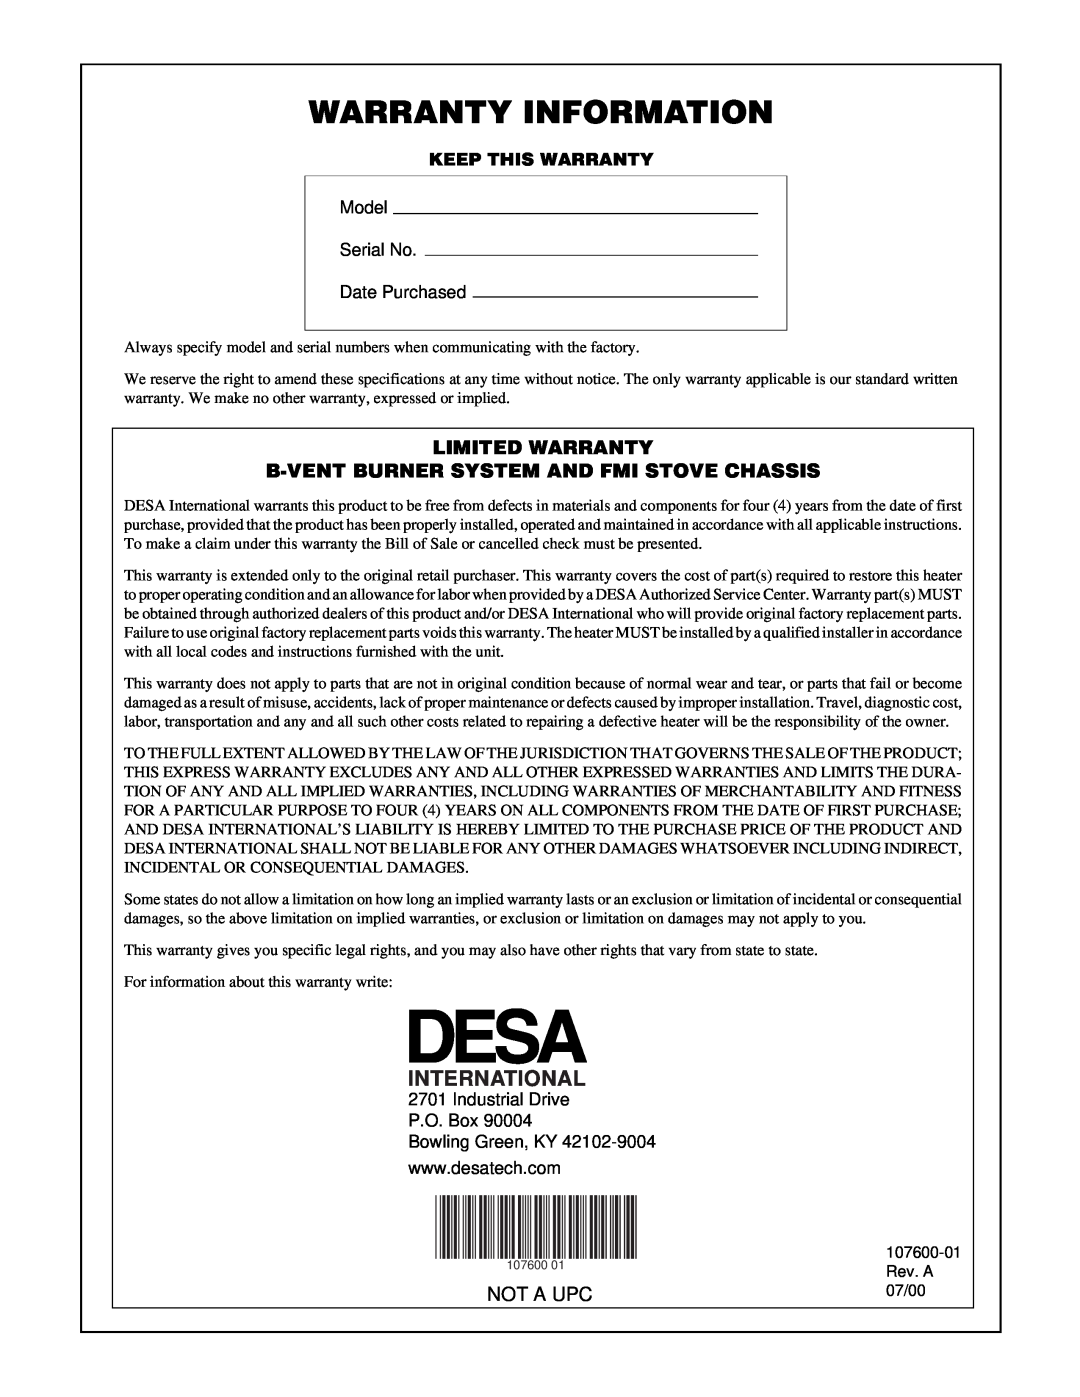 Desa FSBVBNC, FSBVBPC installation manual International, Warranty Information, Not A Upc, Model Serial No Date Purchased 